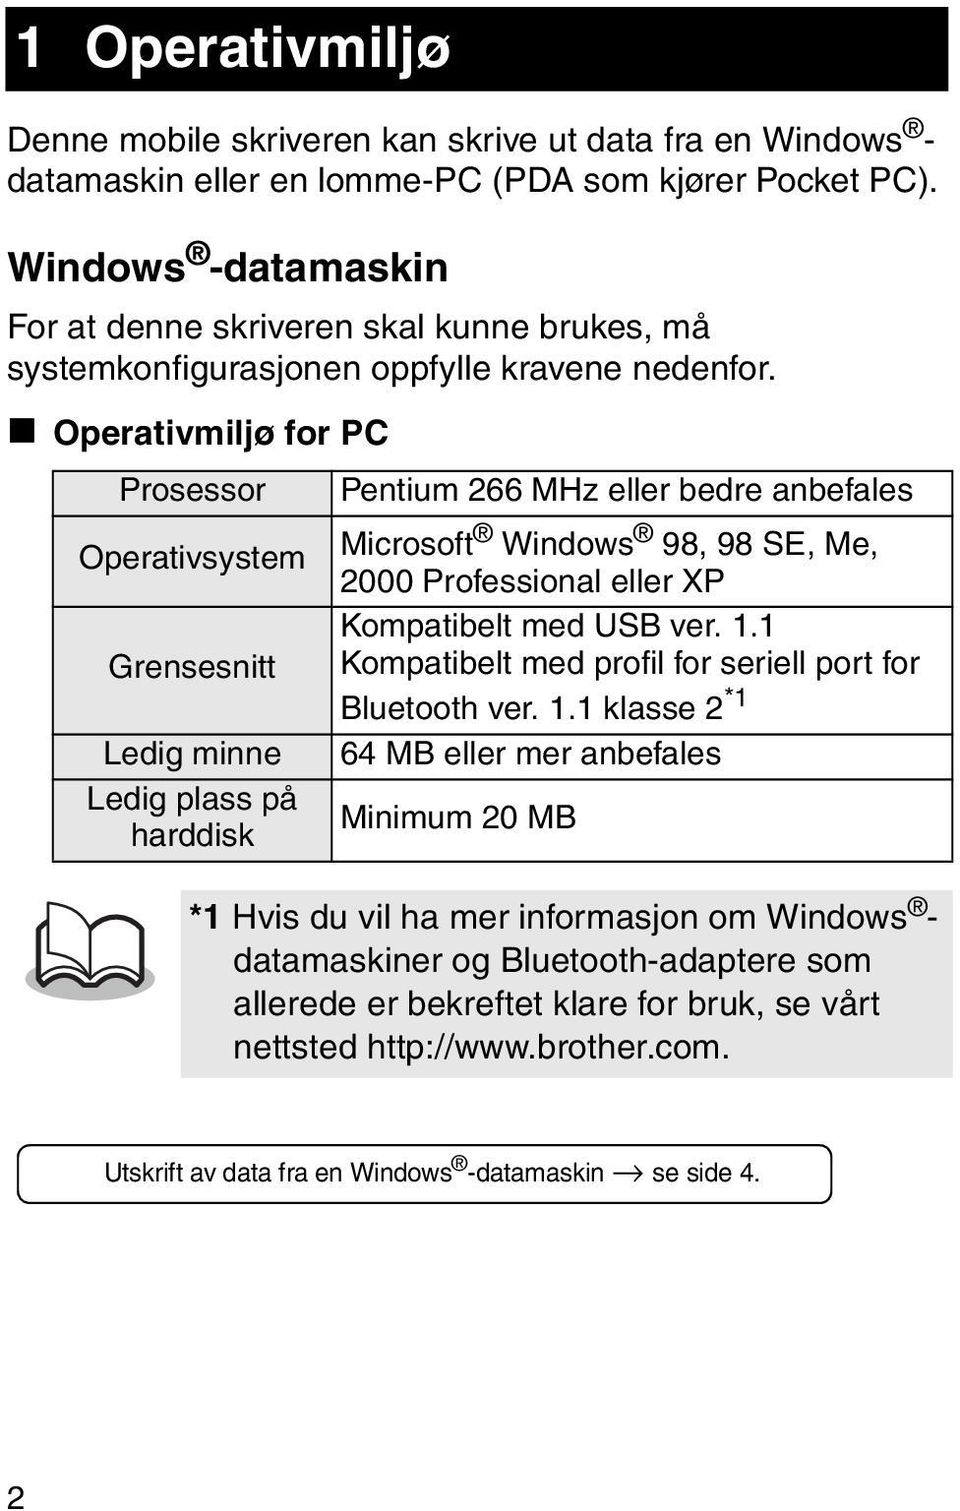 " Operativmiljø for PC Prosessor Pentium 266 MHz eller bedre anbefales Operativsystem Microsoft Windows 98, 98 SE, Me, 2000 Professional eller XP Kompatibelt med USB ver. 1.